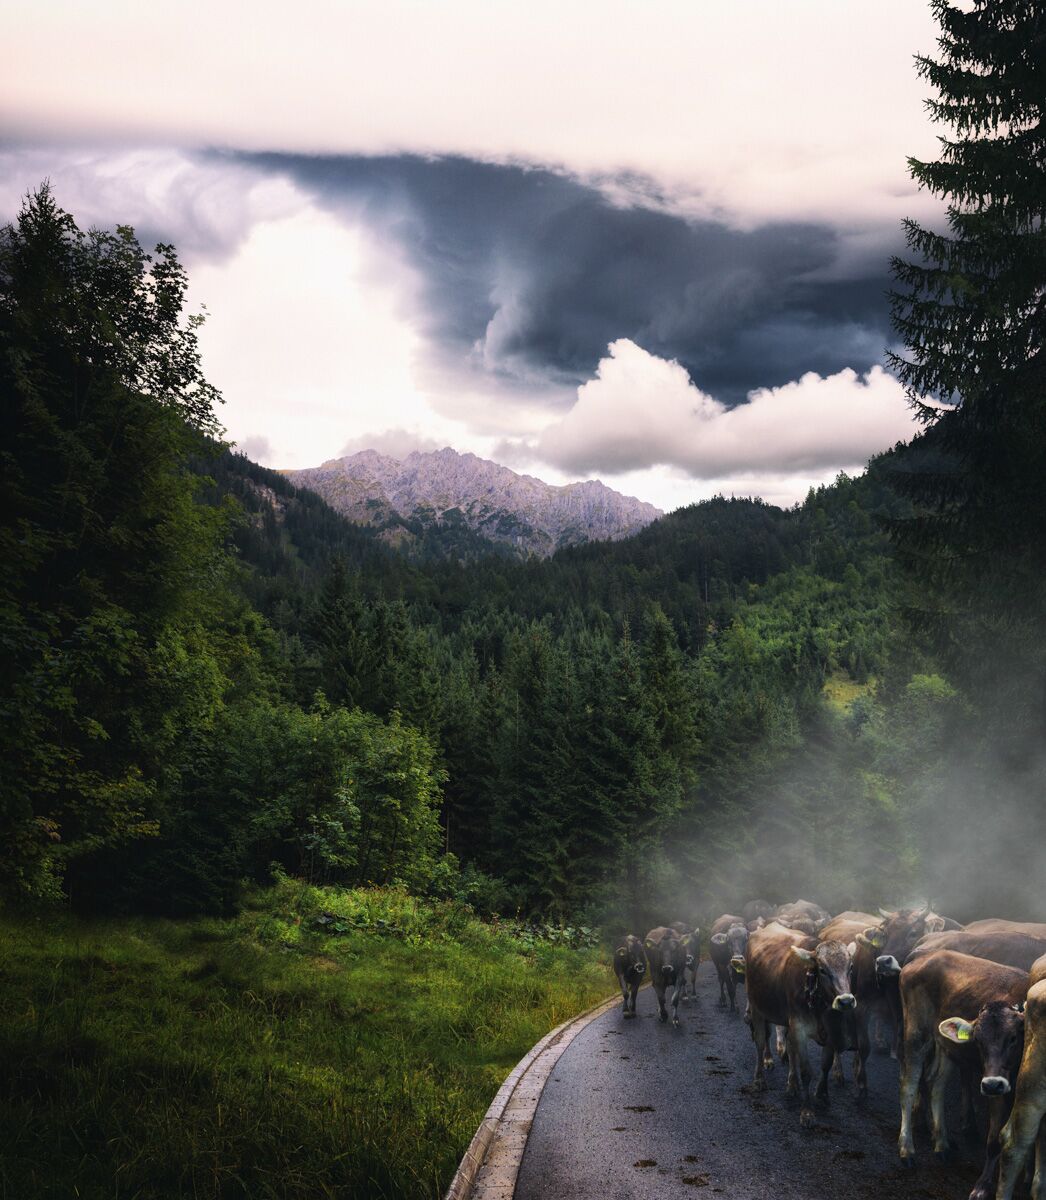 kuhbilder aus dem allgäu Kuh Bild Allgäu Alpen Berge Kuh Braunvieh Vieh Rind Rinder Kühe Viehscheid Alp Alm Bergsommer Hinterstein grün